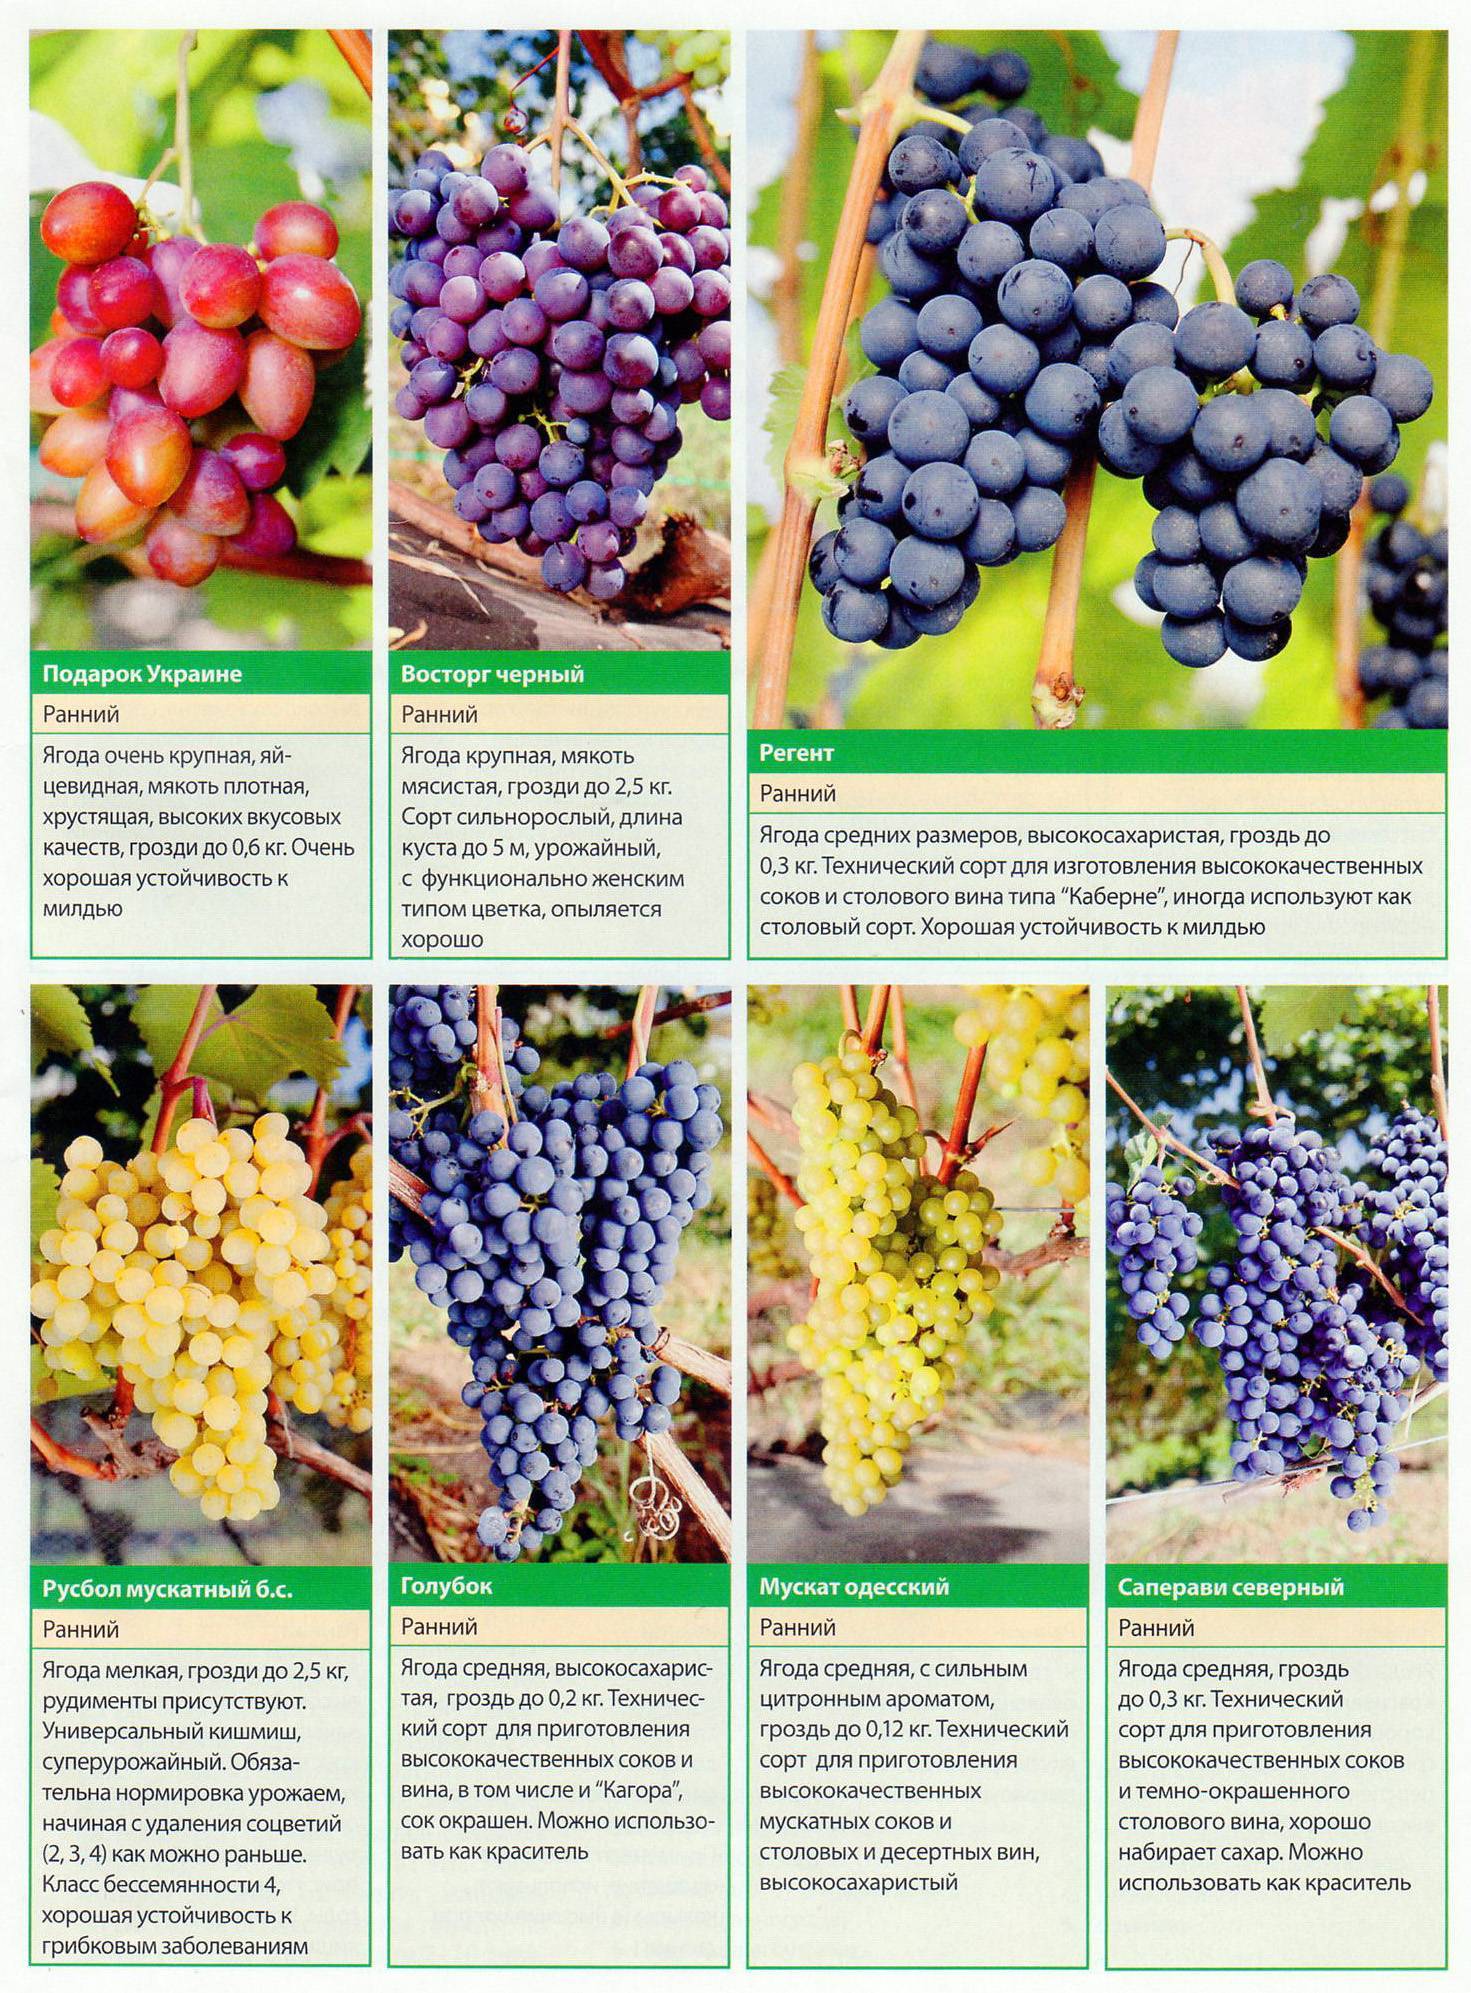 Сорта винограда — их характеристики и описание